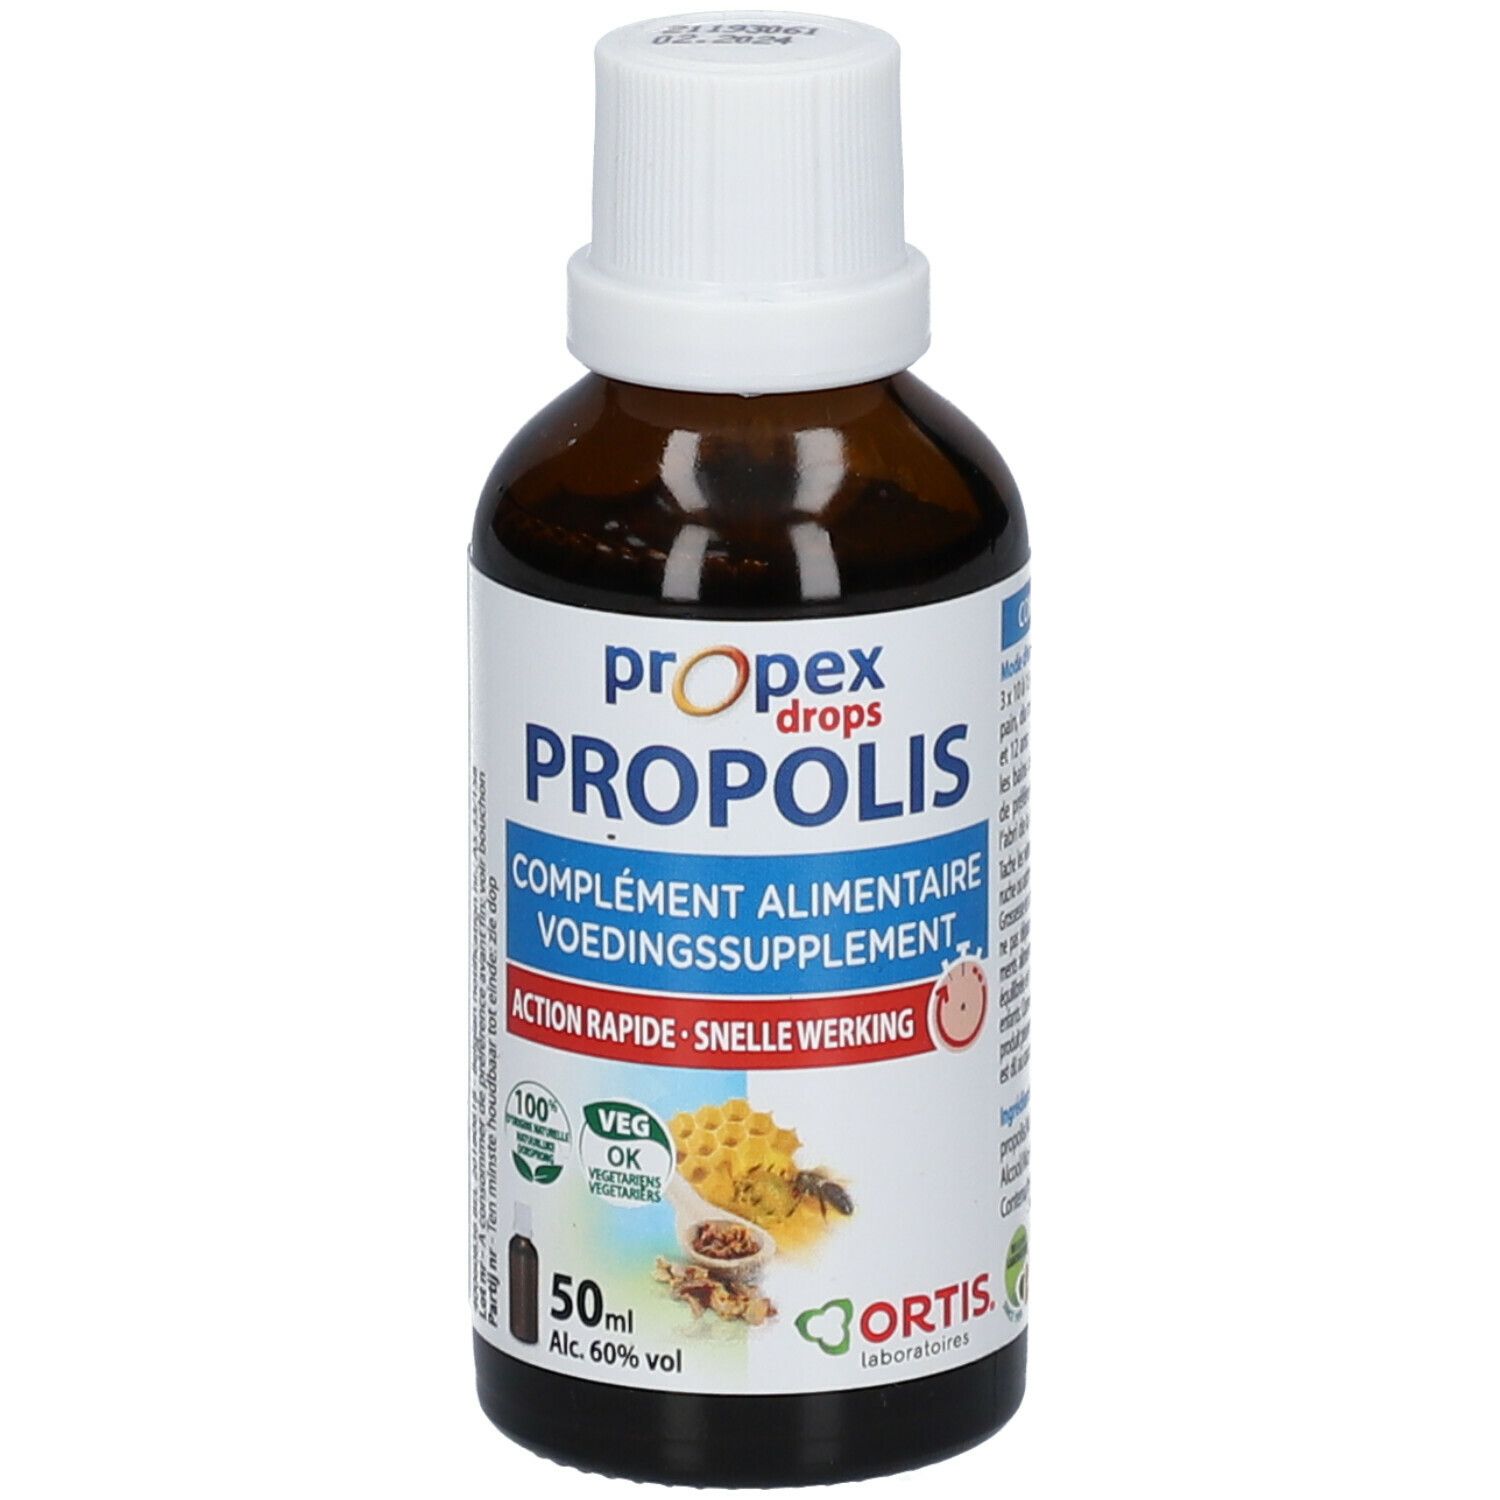 Ortis Propex Drops Propolis